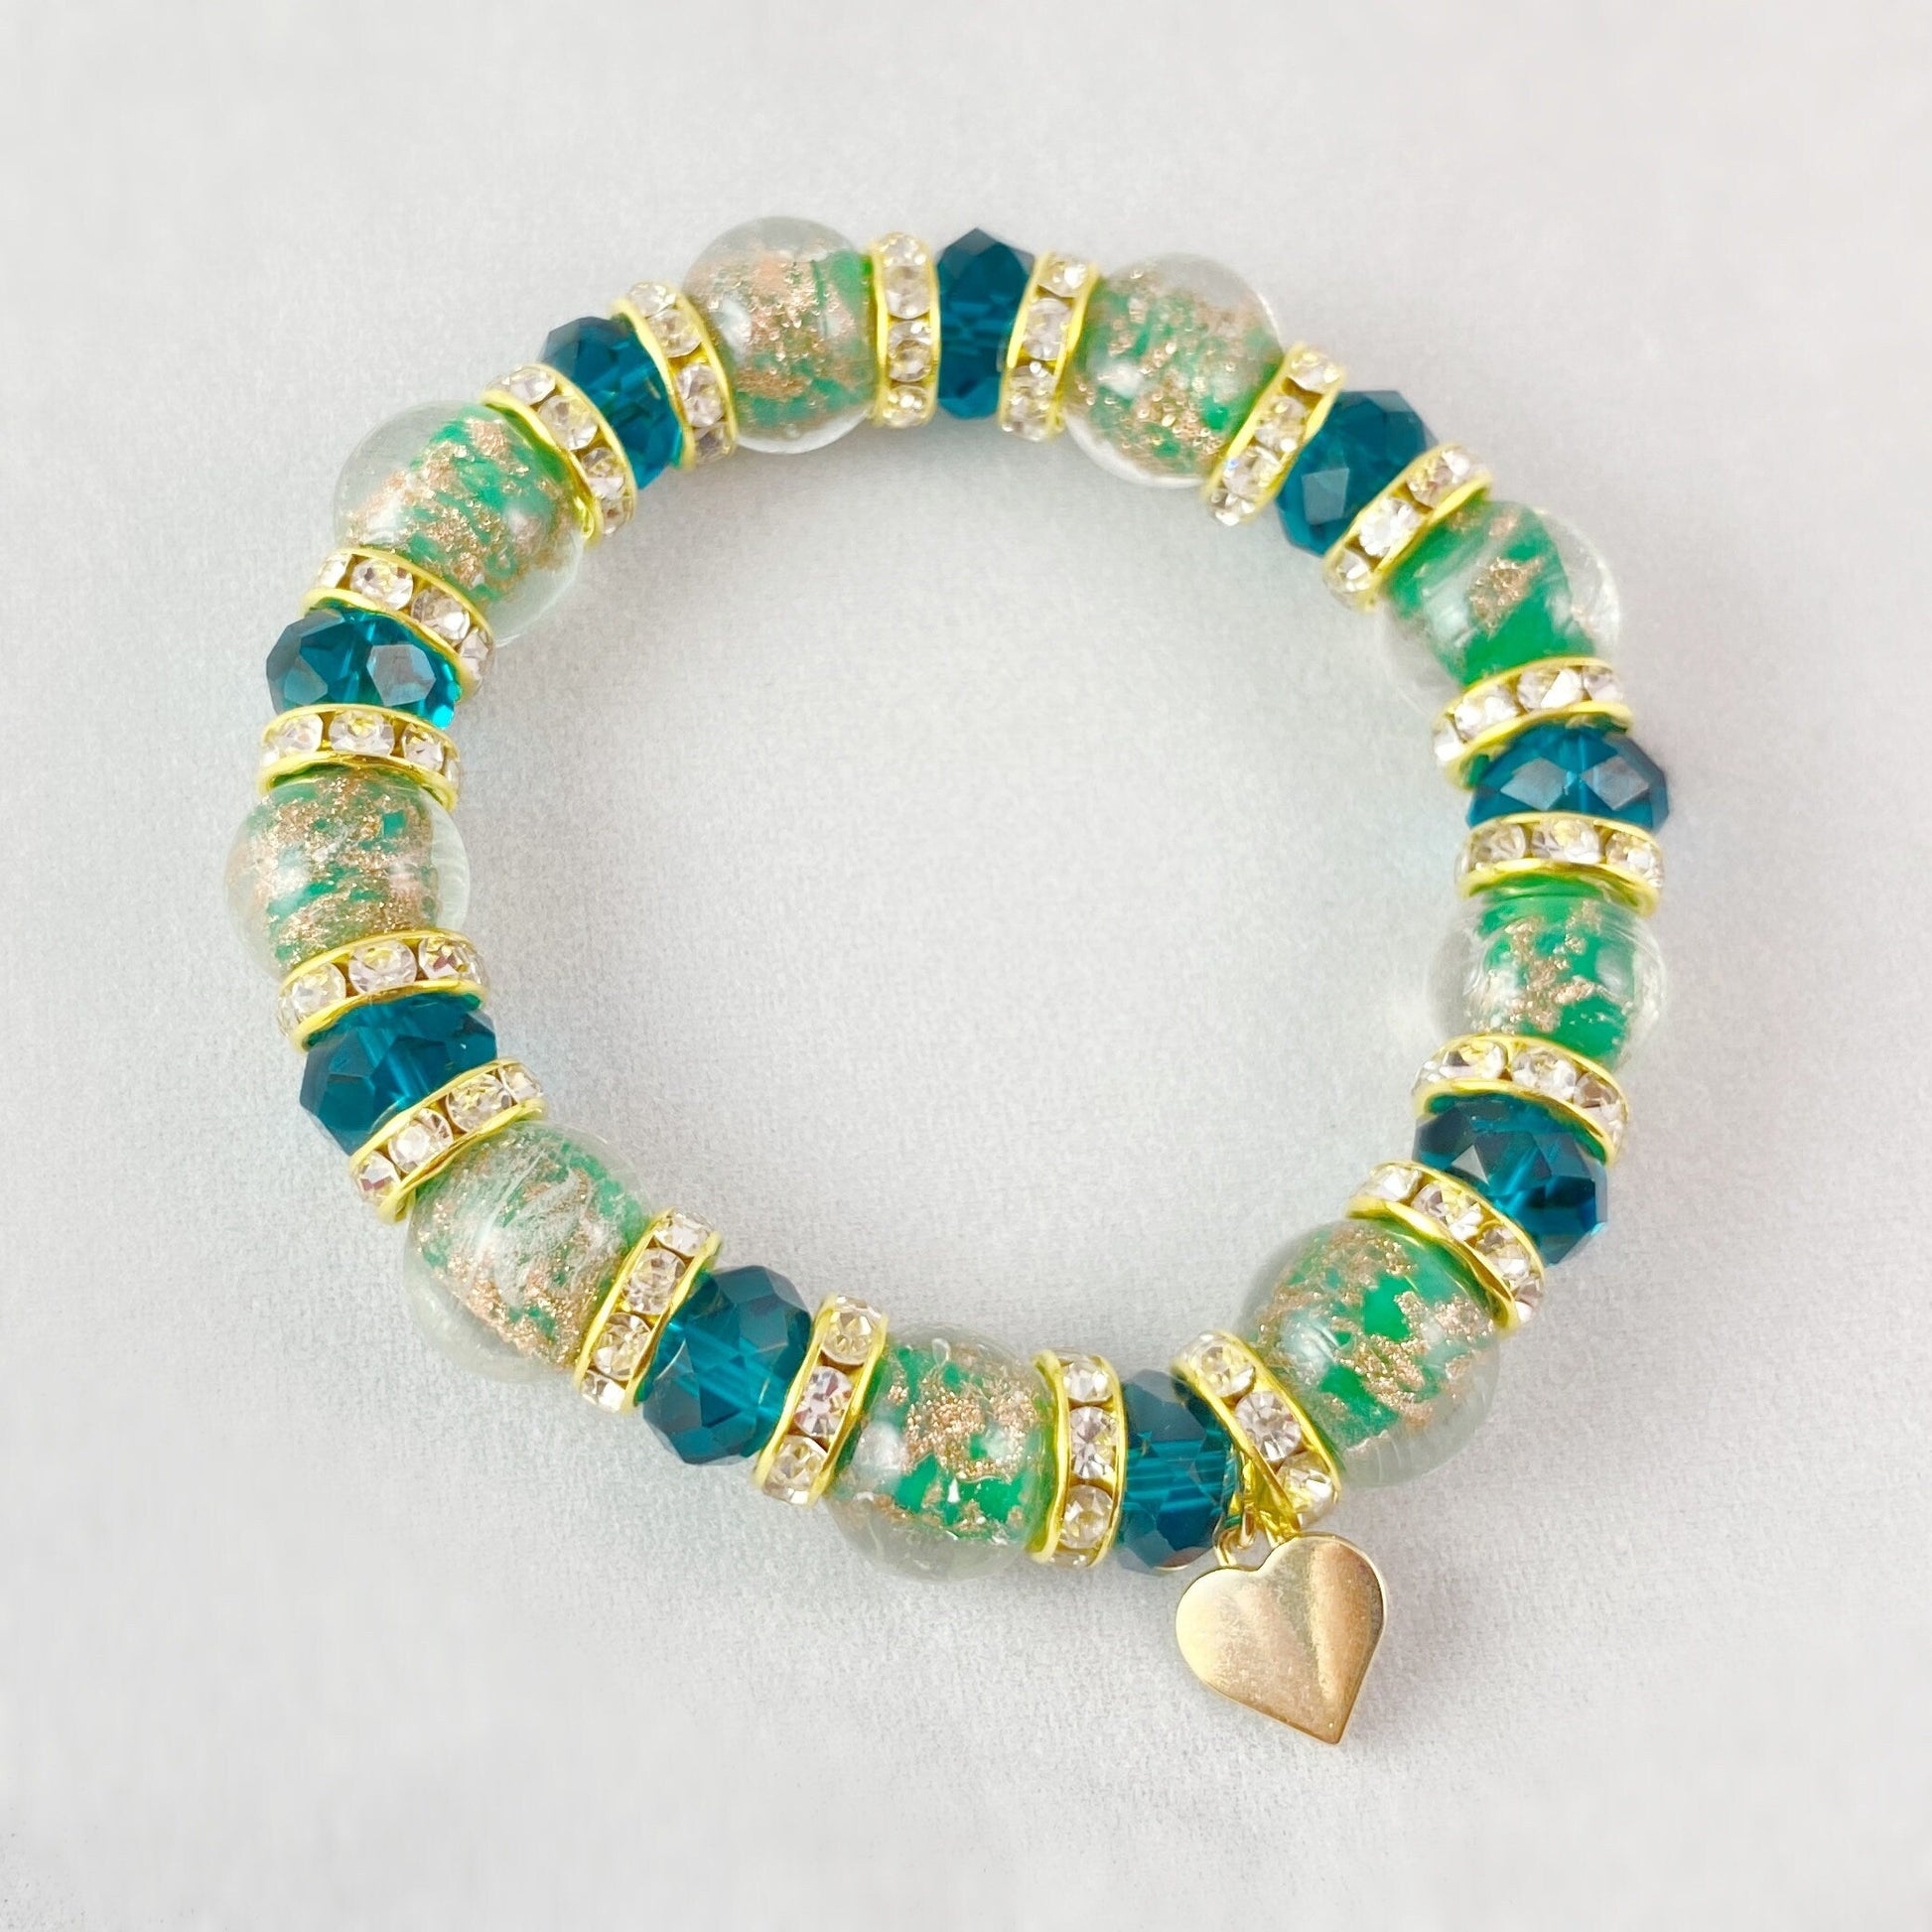 Green Beaded Venetian Glass Bracelet - Handmade in Italy, Colorful Murano Glass